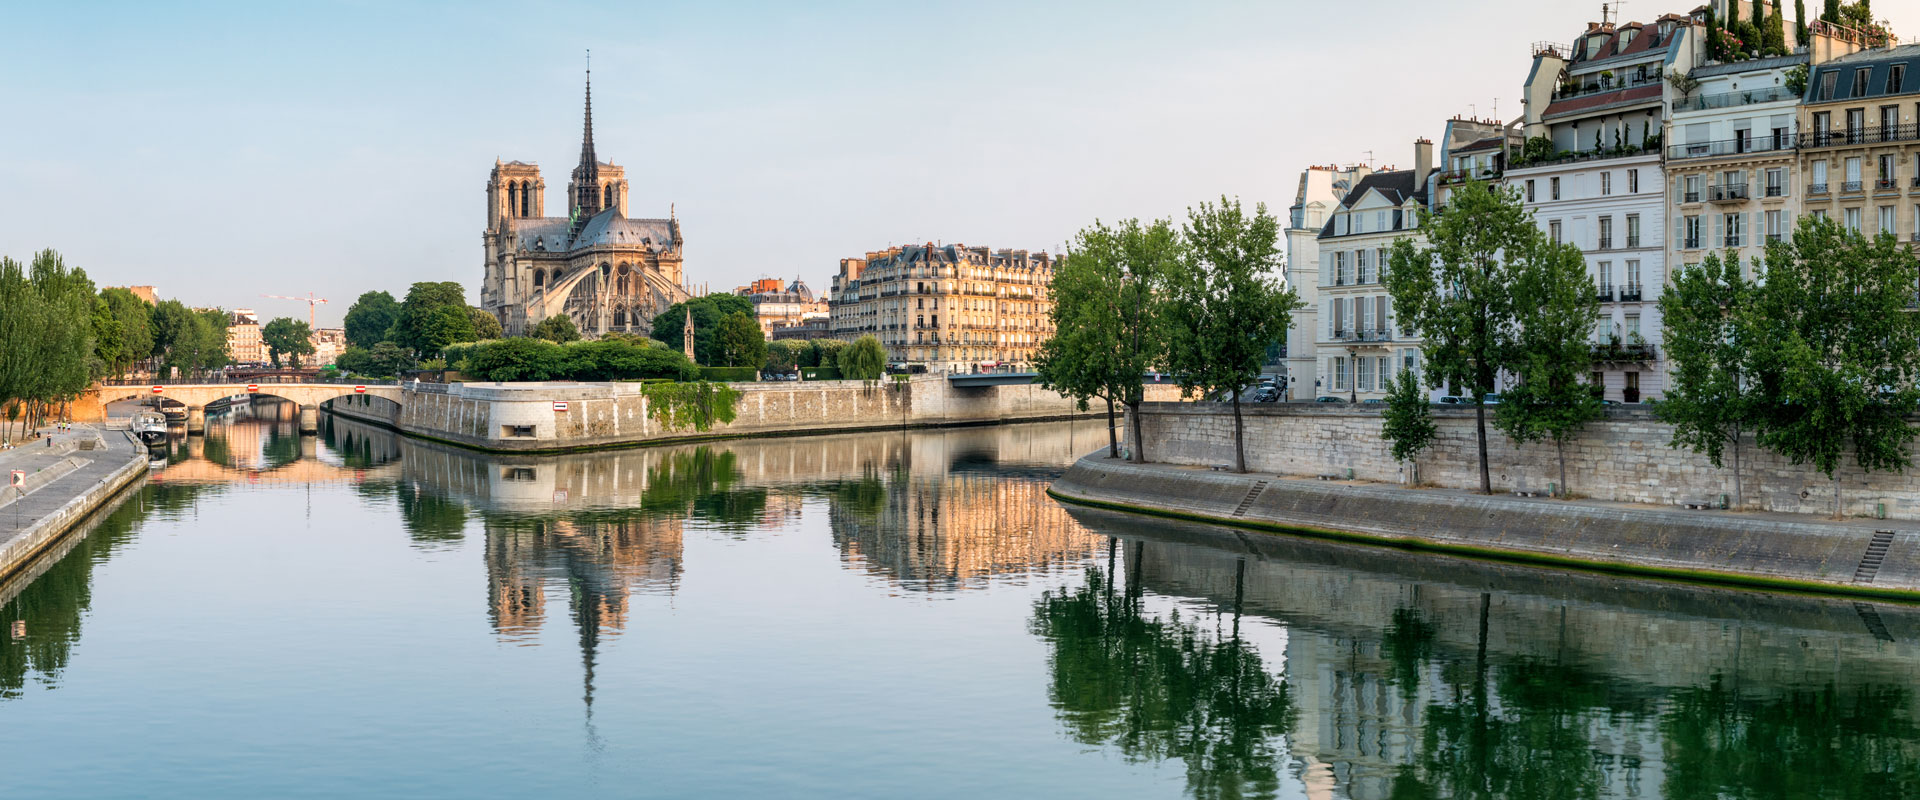 Notre Dame und Seine - Paris Reise